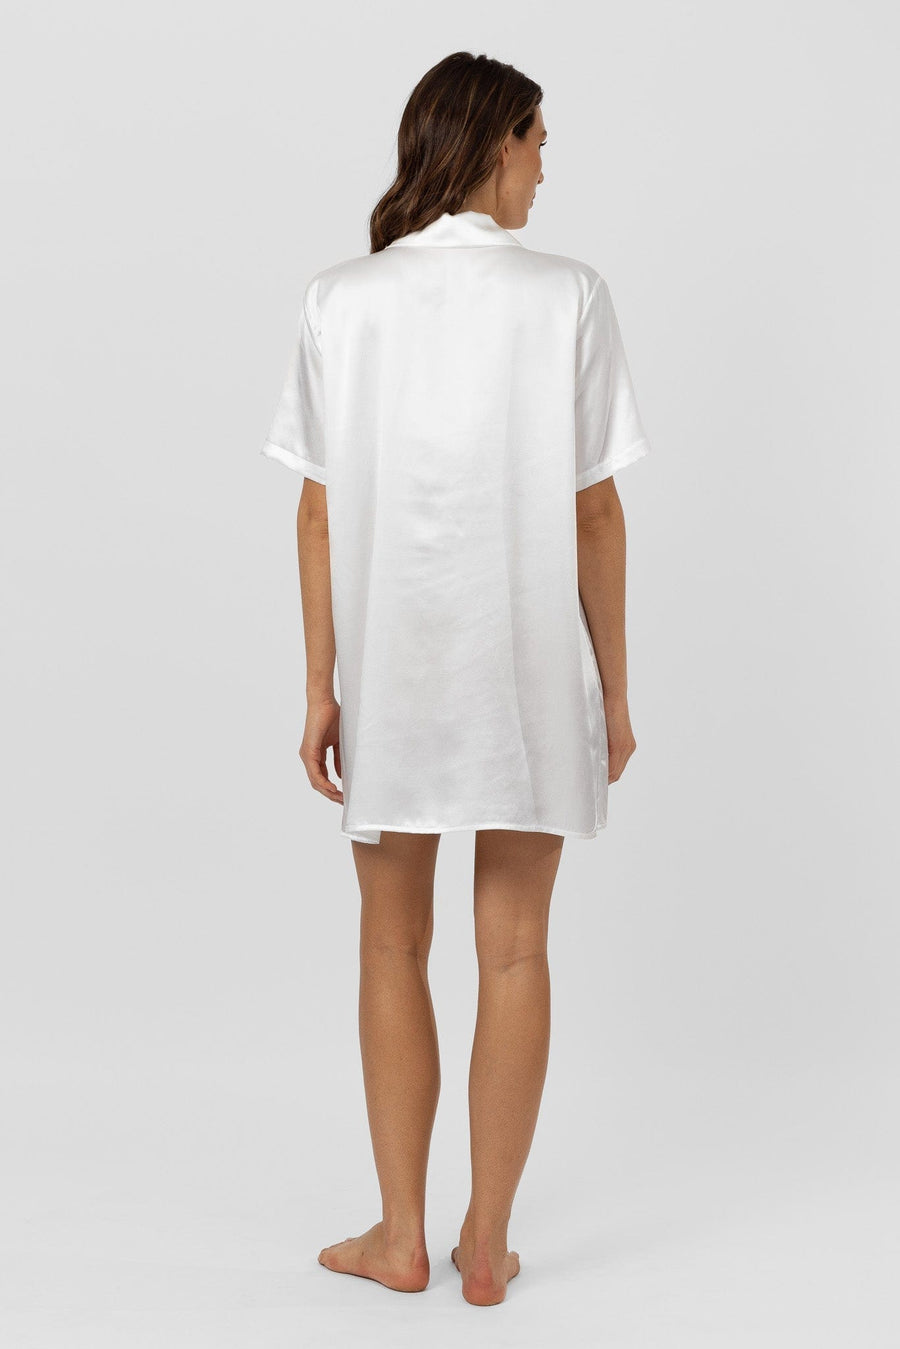 DRESS Lumiere Short Sleeve Shirt Dress